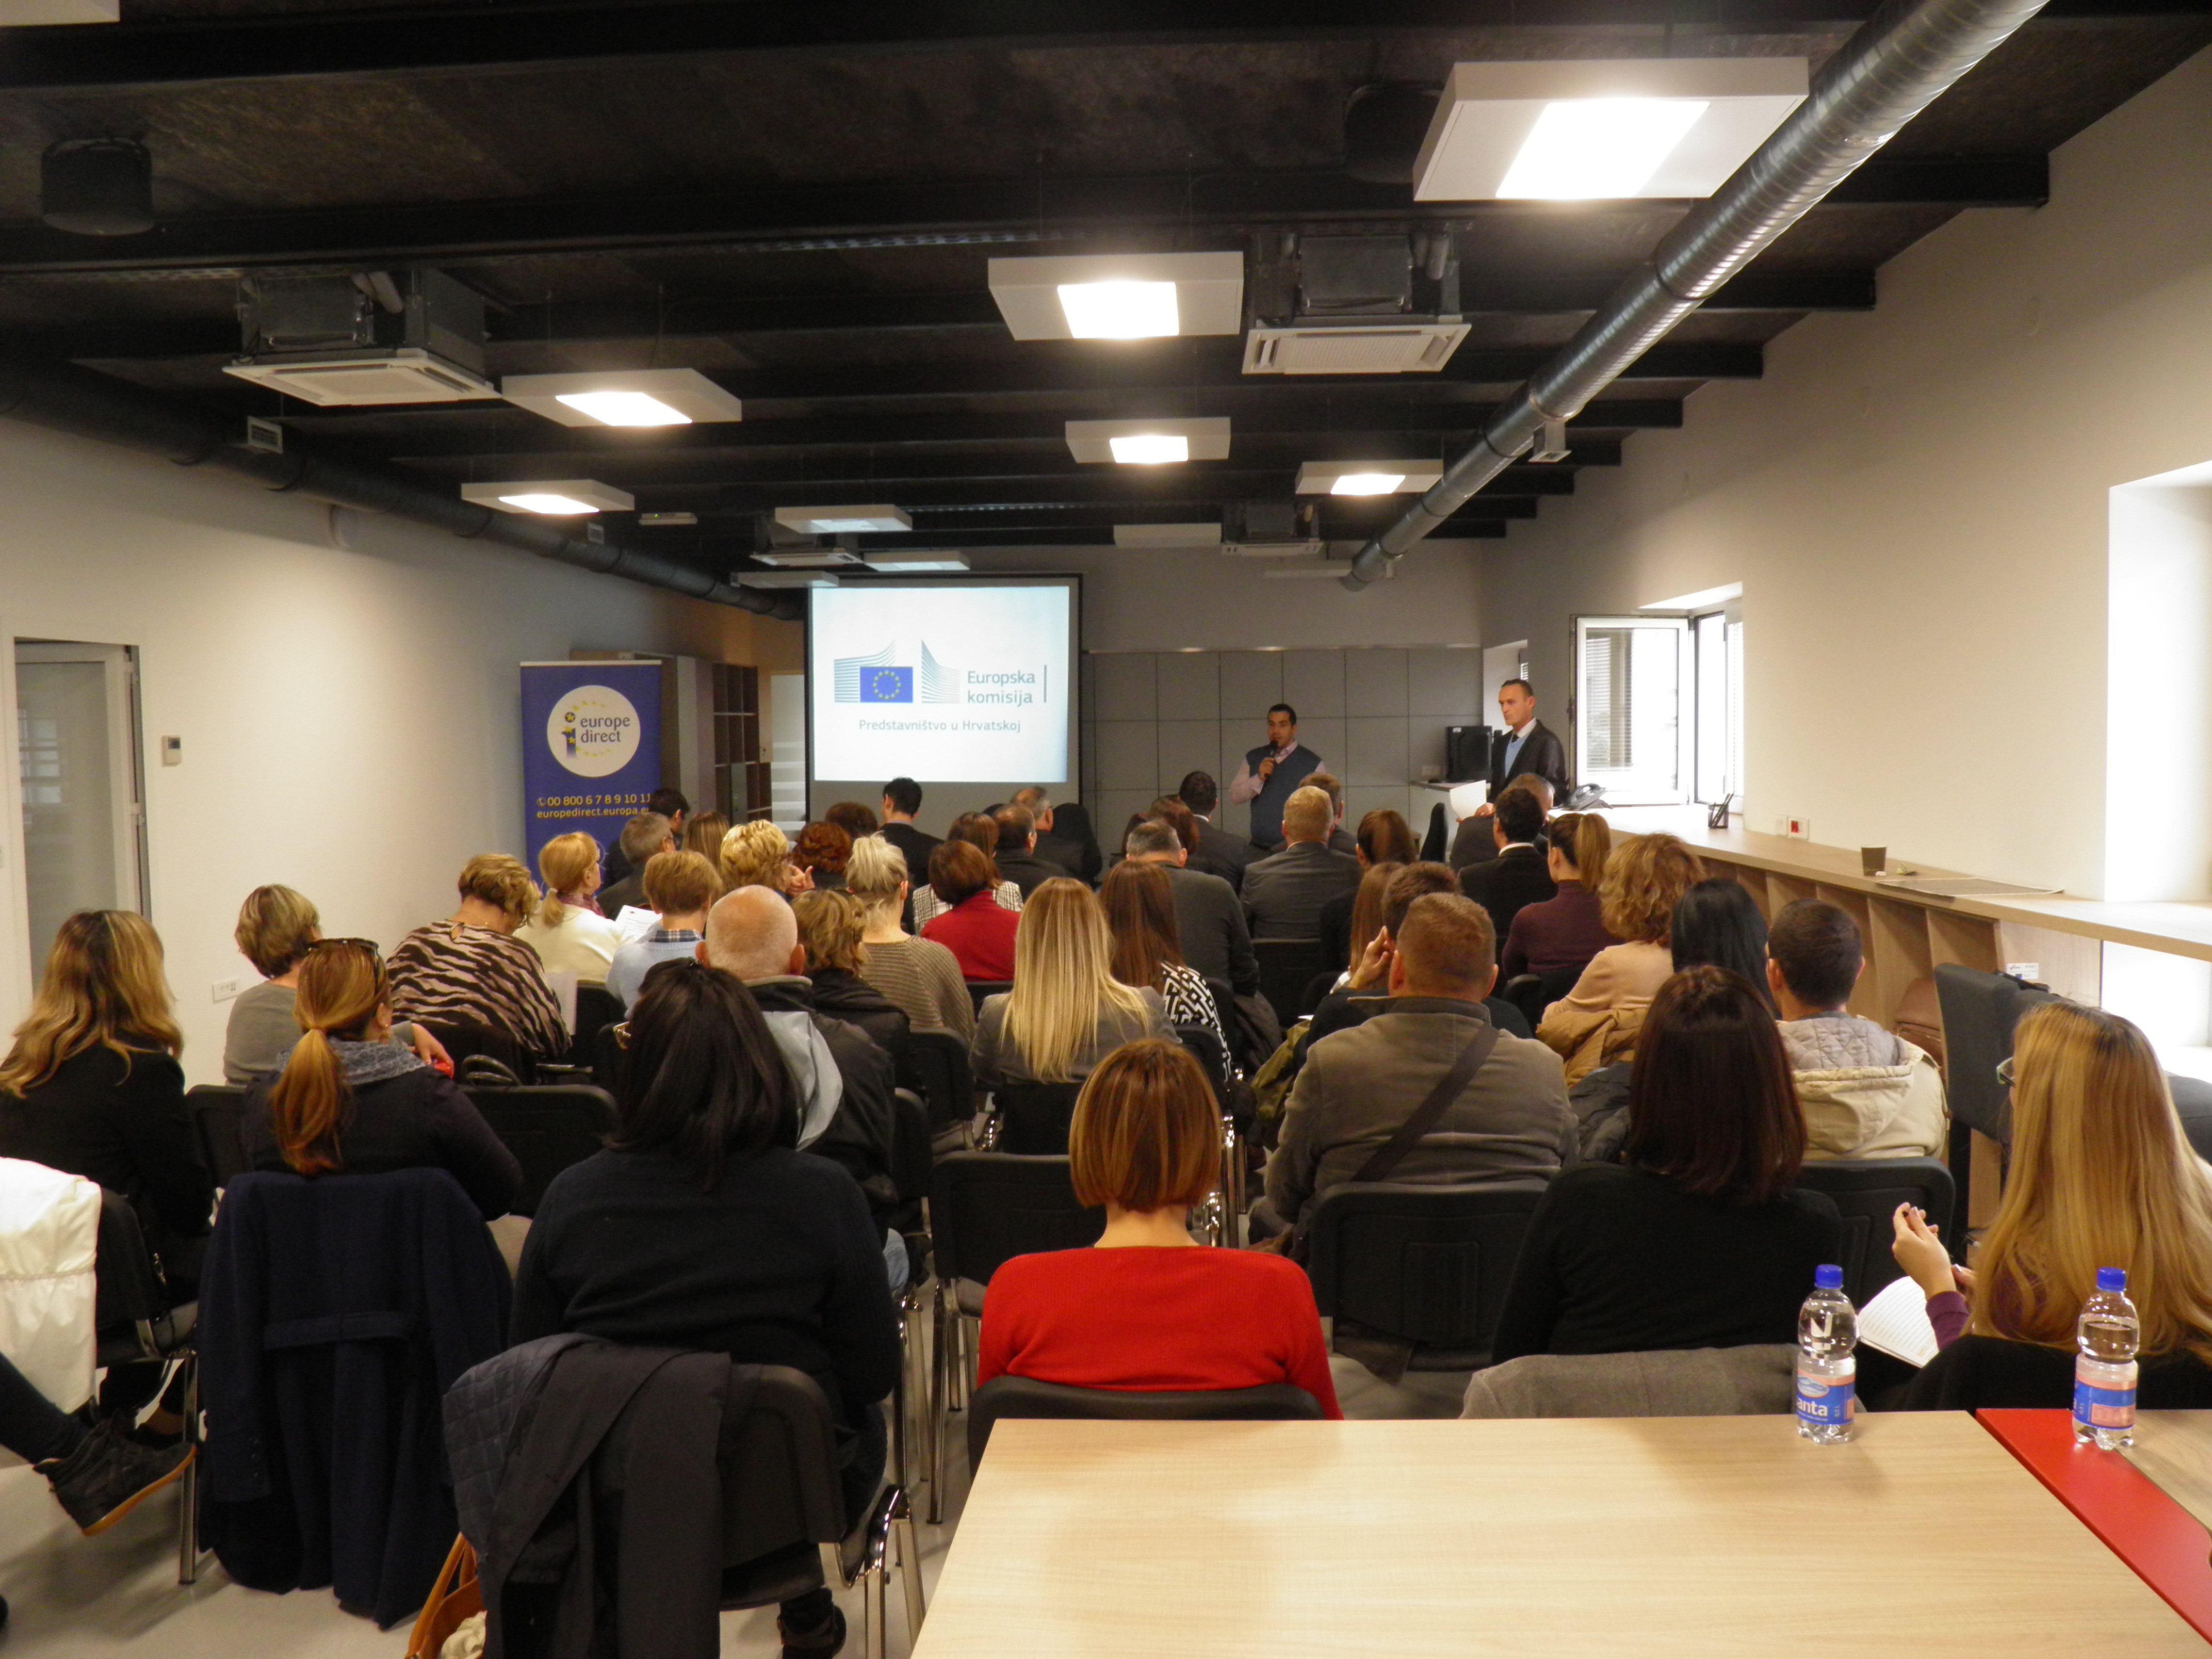 Održana konferencija na temu: “Mogućnosti i izazovi hrvatskih poduzetnika na zajedničkom tržištu” na kojoj je sudjelovala i ZADRA NOVA